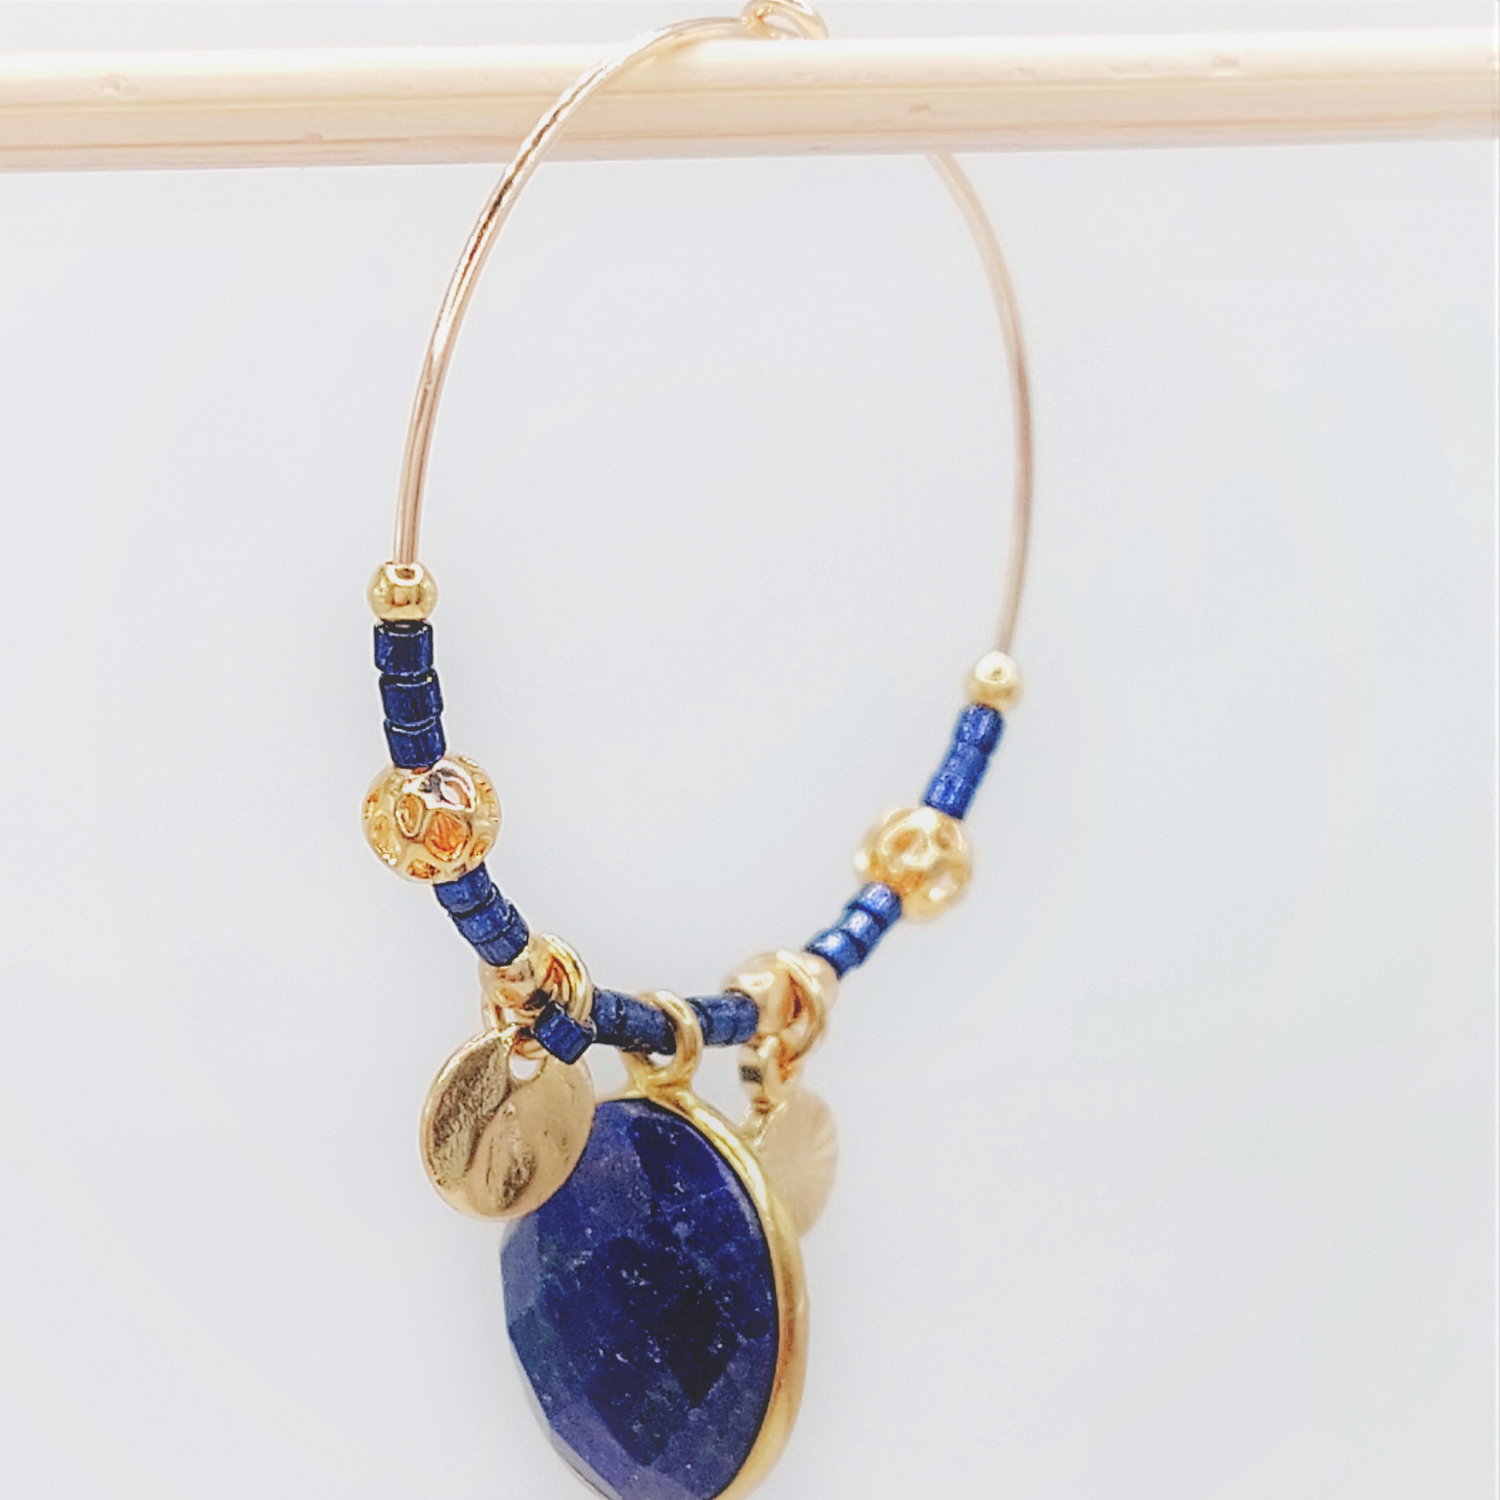 l-insolente-bijoux-boucle-d-oreille-creole-gold filled-lapis lazuli-2